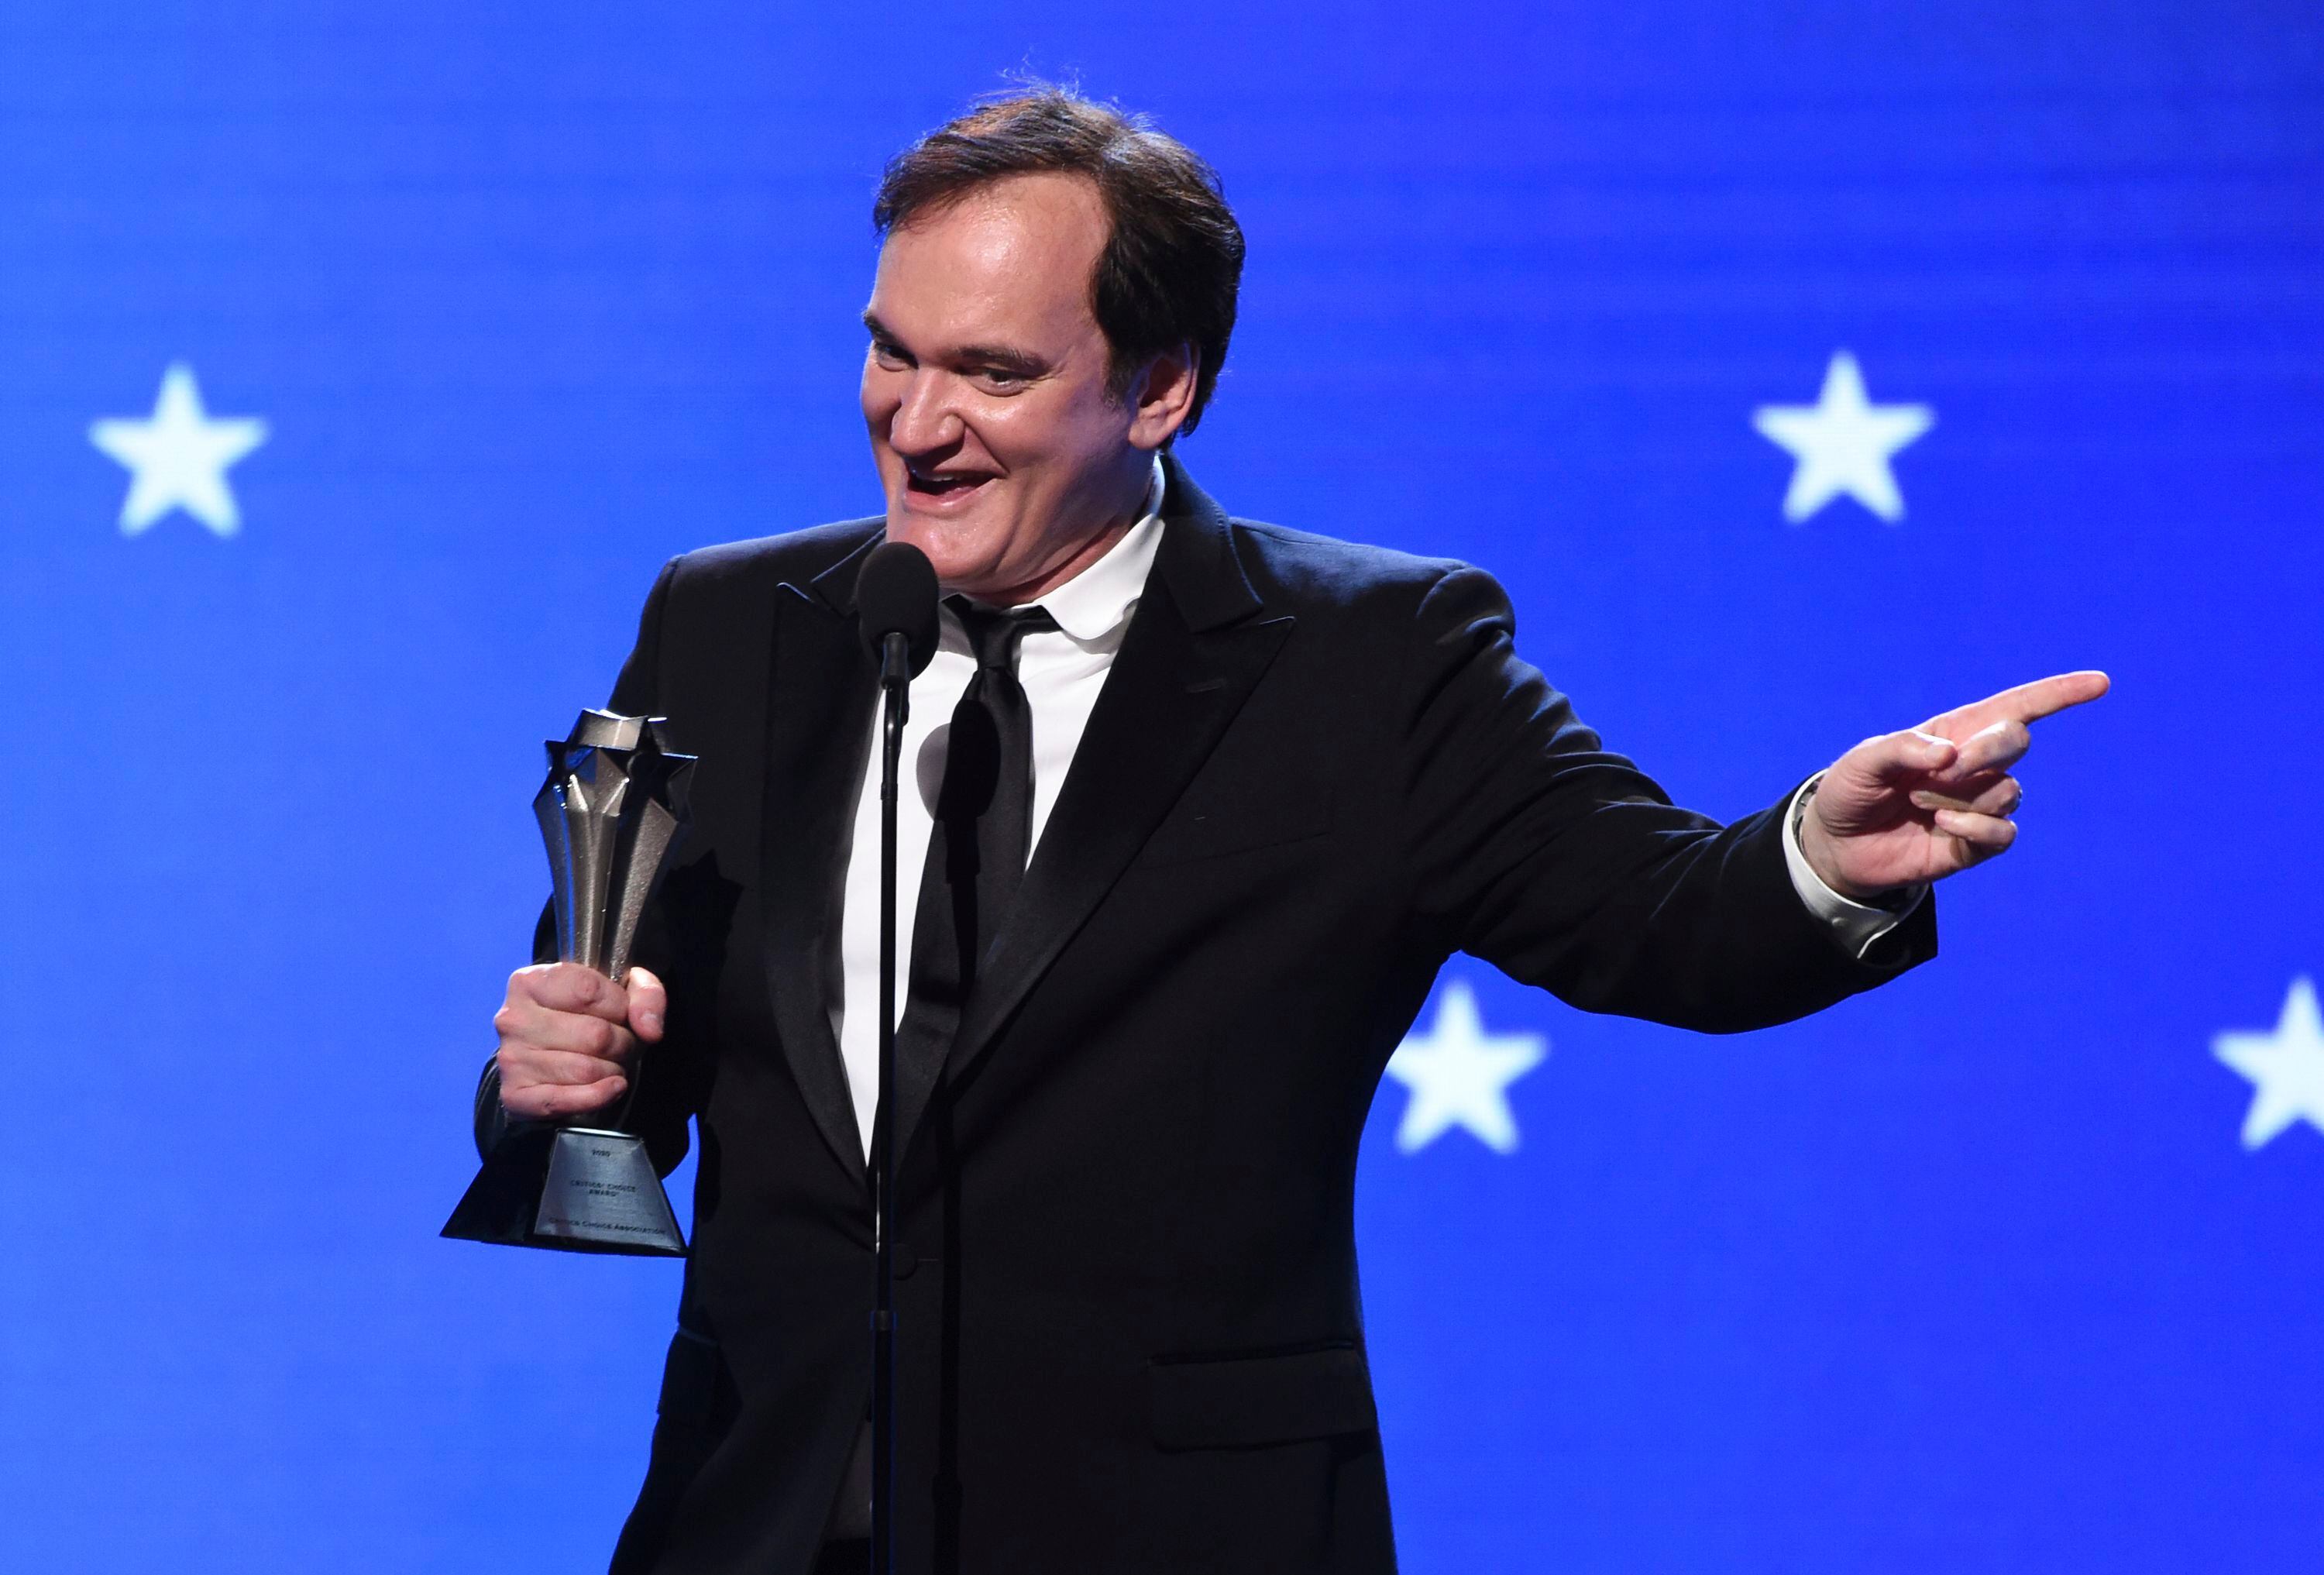 El director de cine Quentin Tarantino había afirmado que empezaría a grabar su última película, pero cambió de decisión.